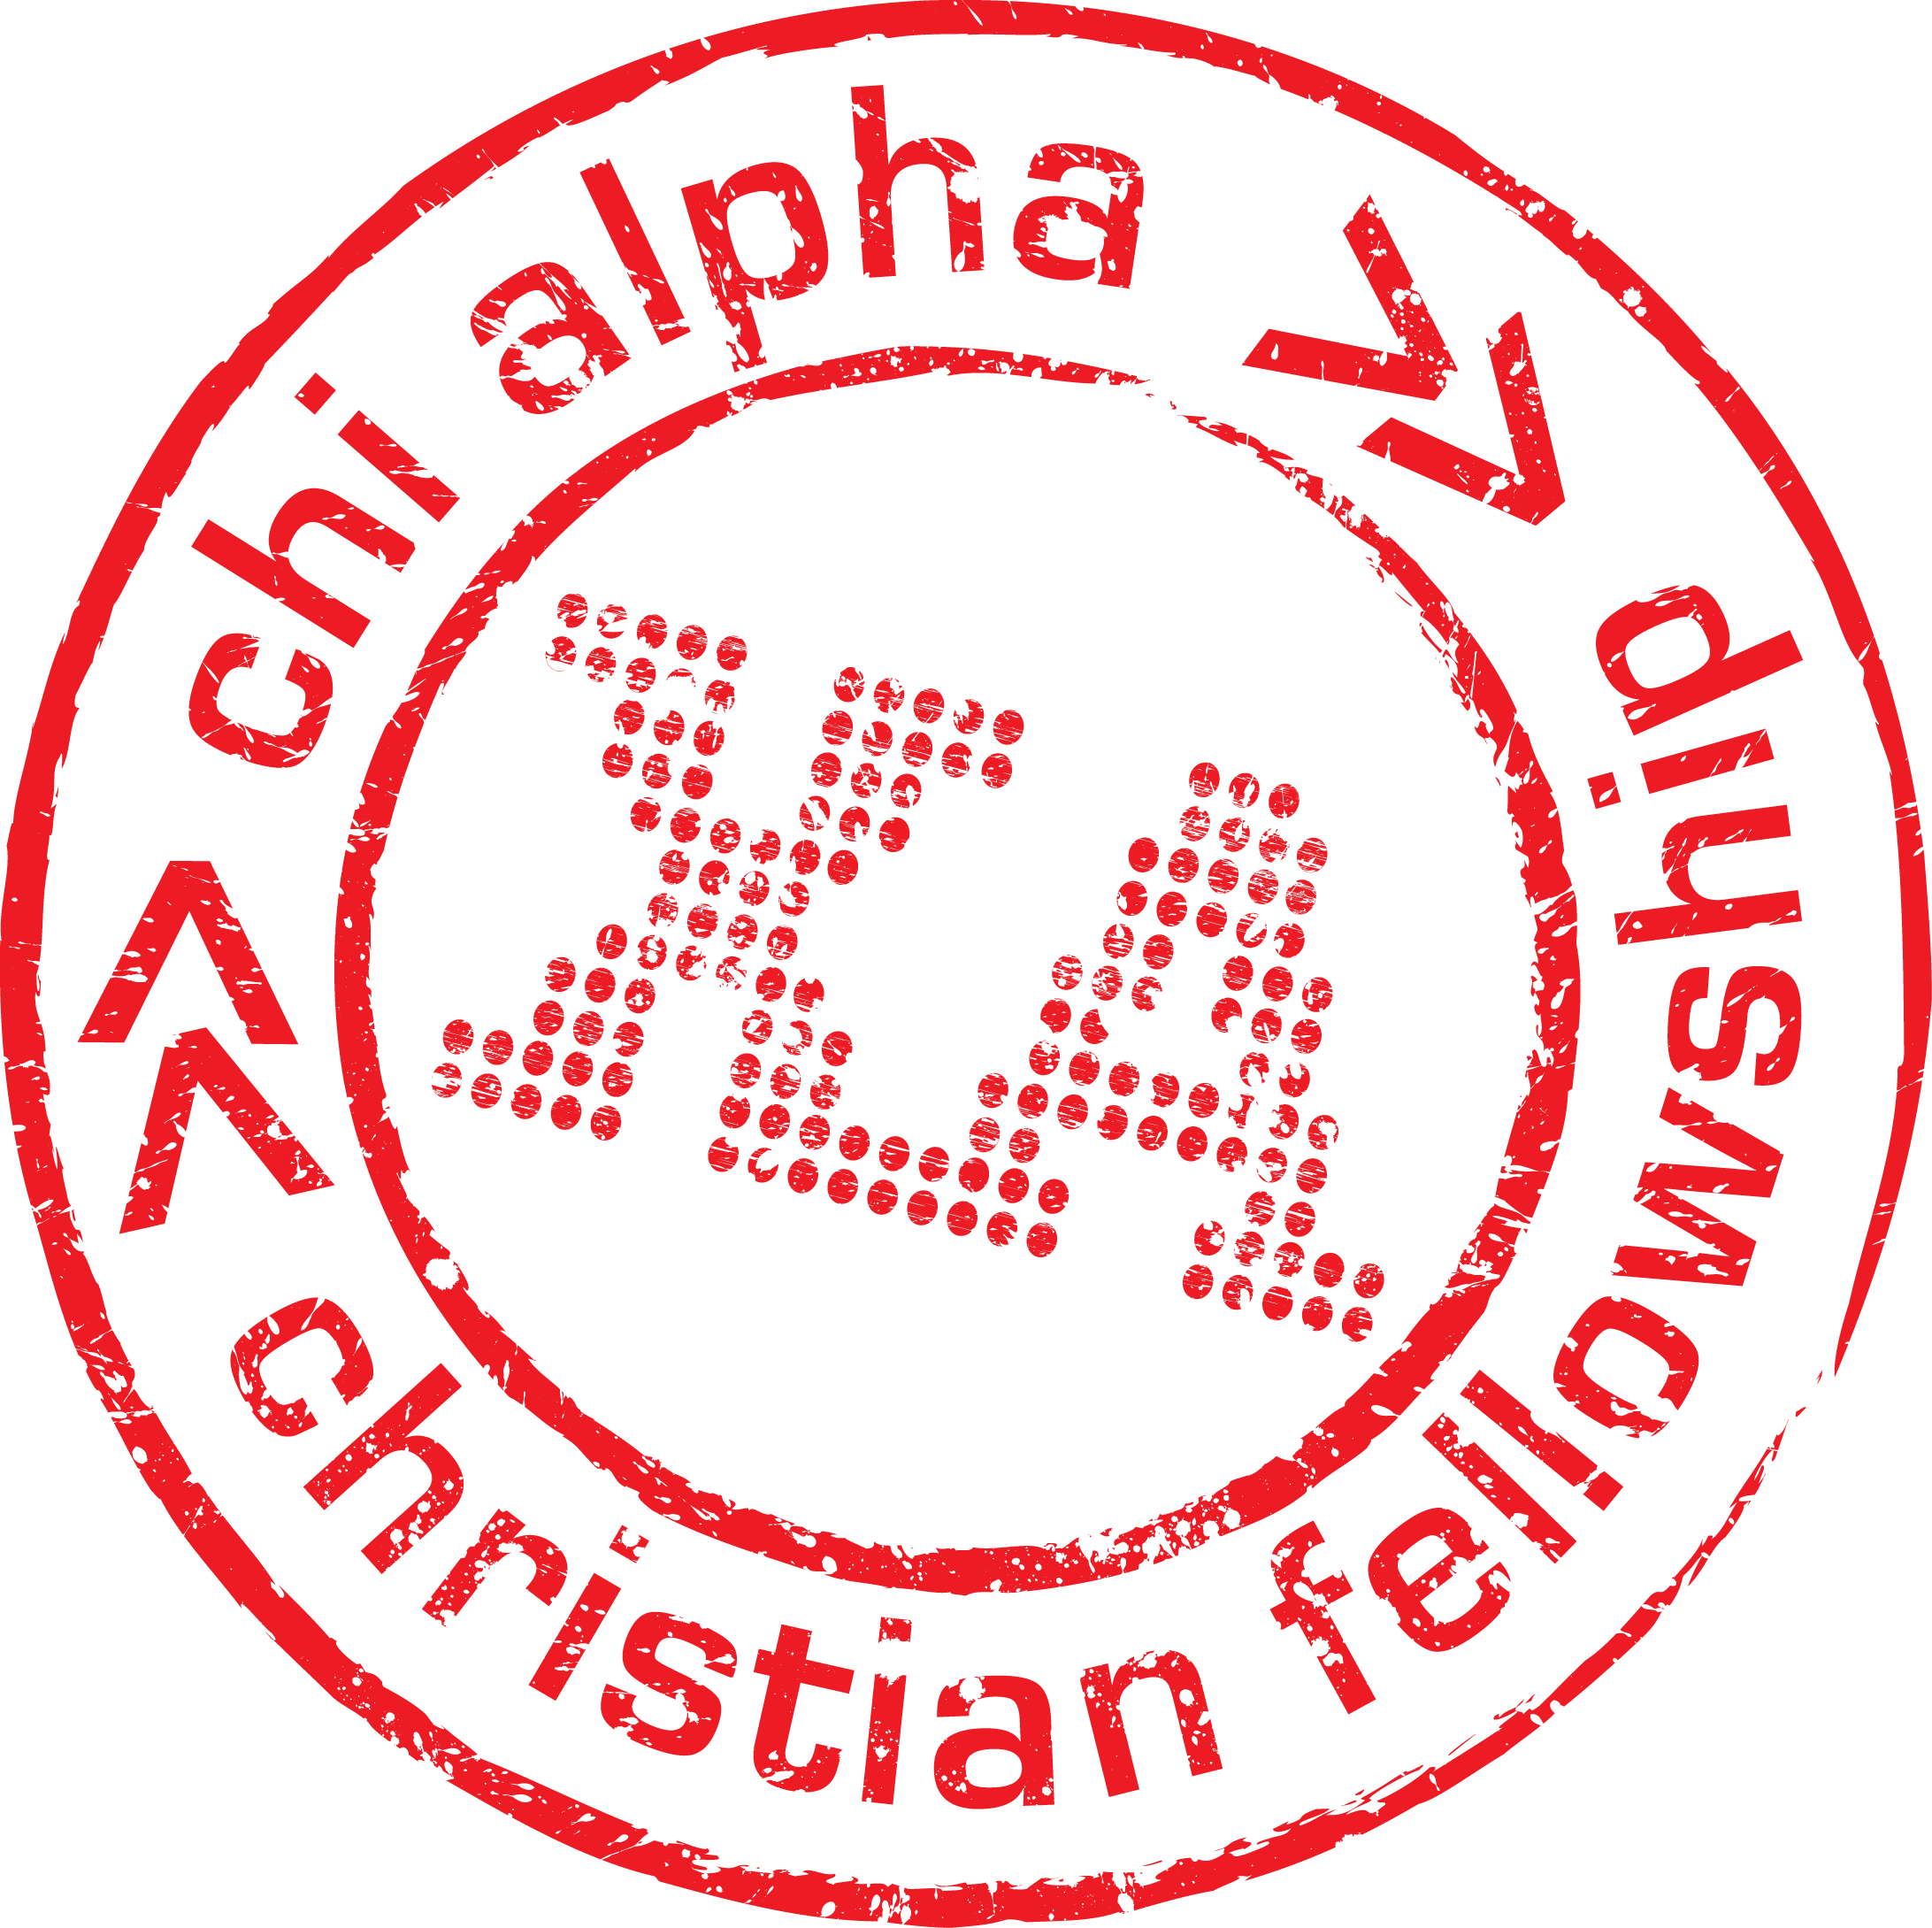 Chi Alpha at VT logo